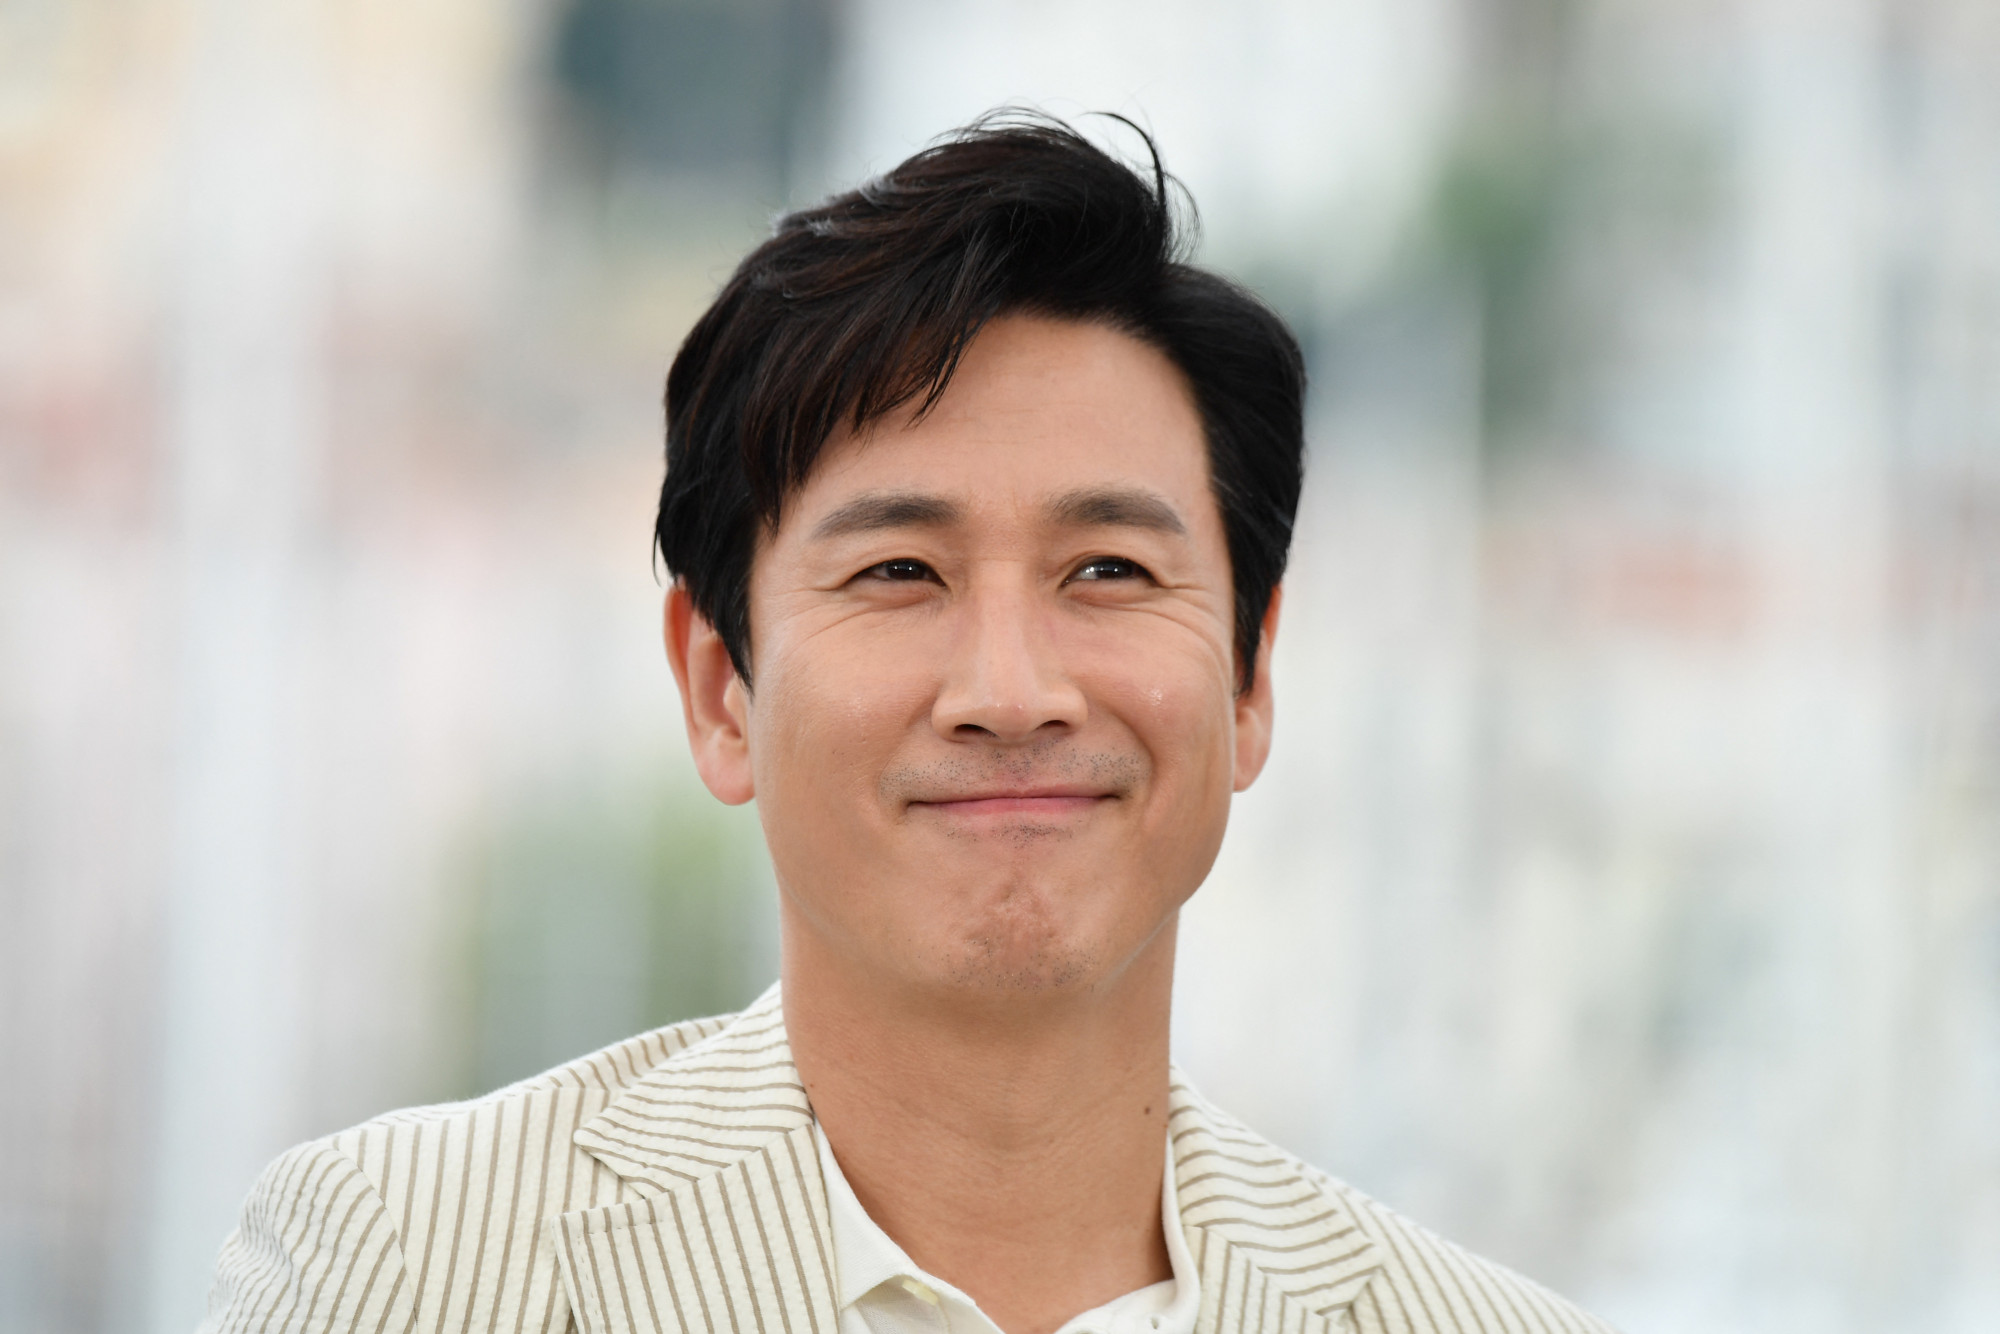 Meghalt Lee Sun-kyun, az Élősködők színésze